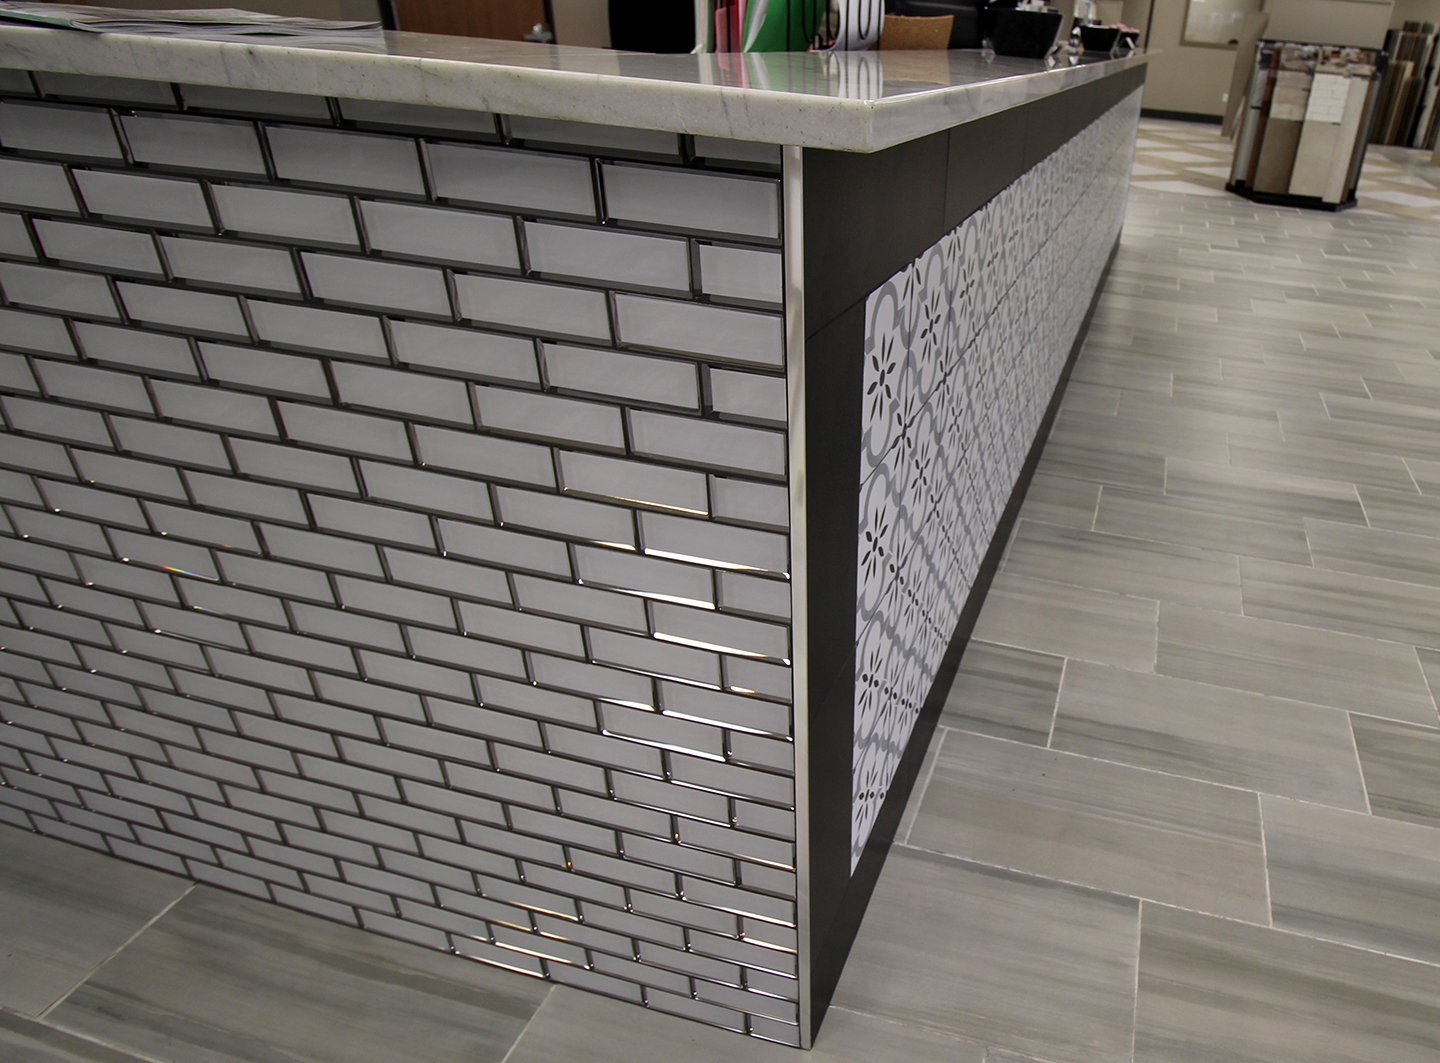 Beveled Subway Tile Backsplash Luxury Remodel